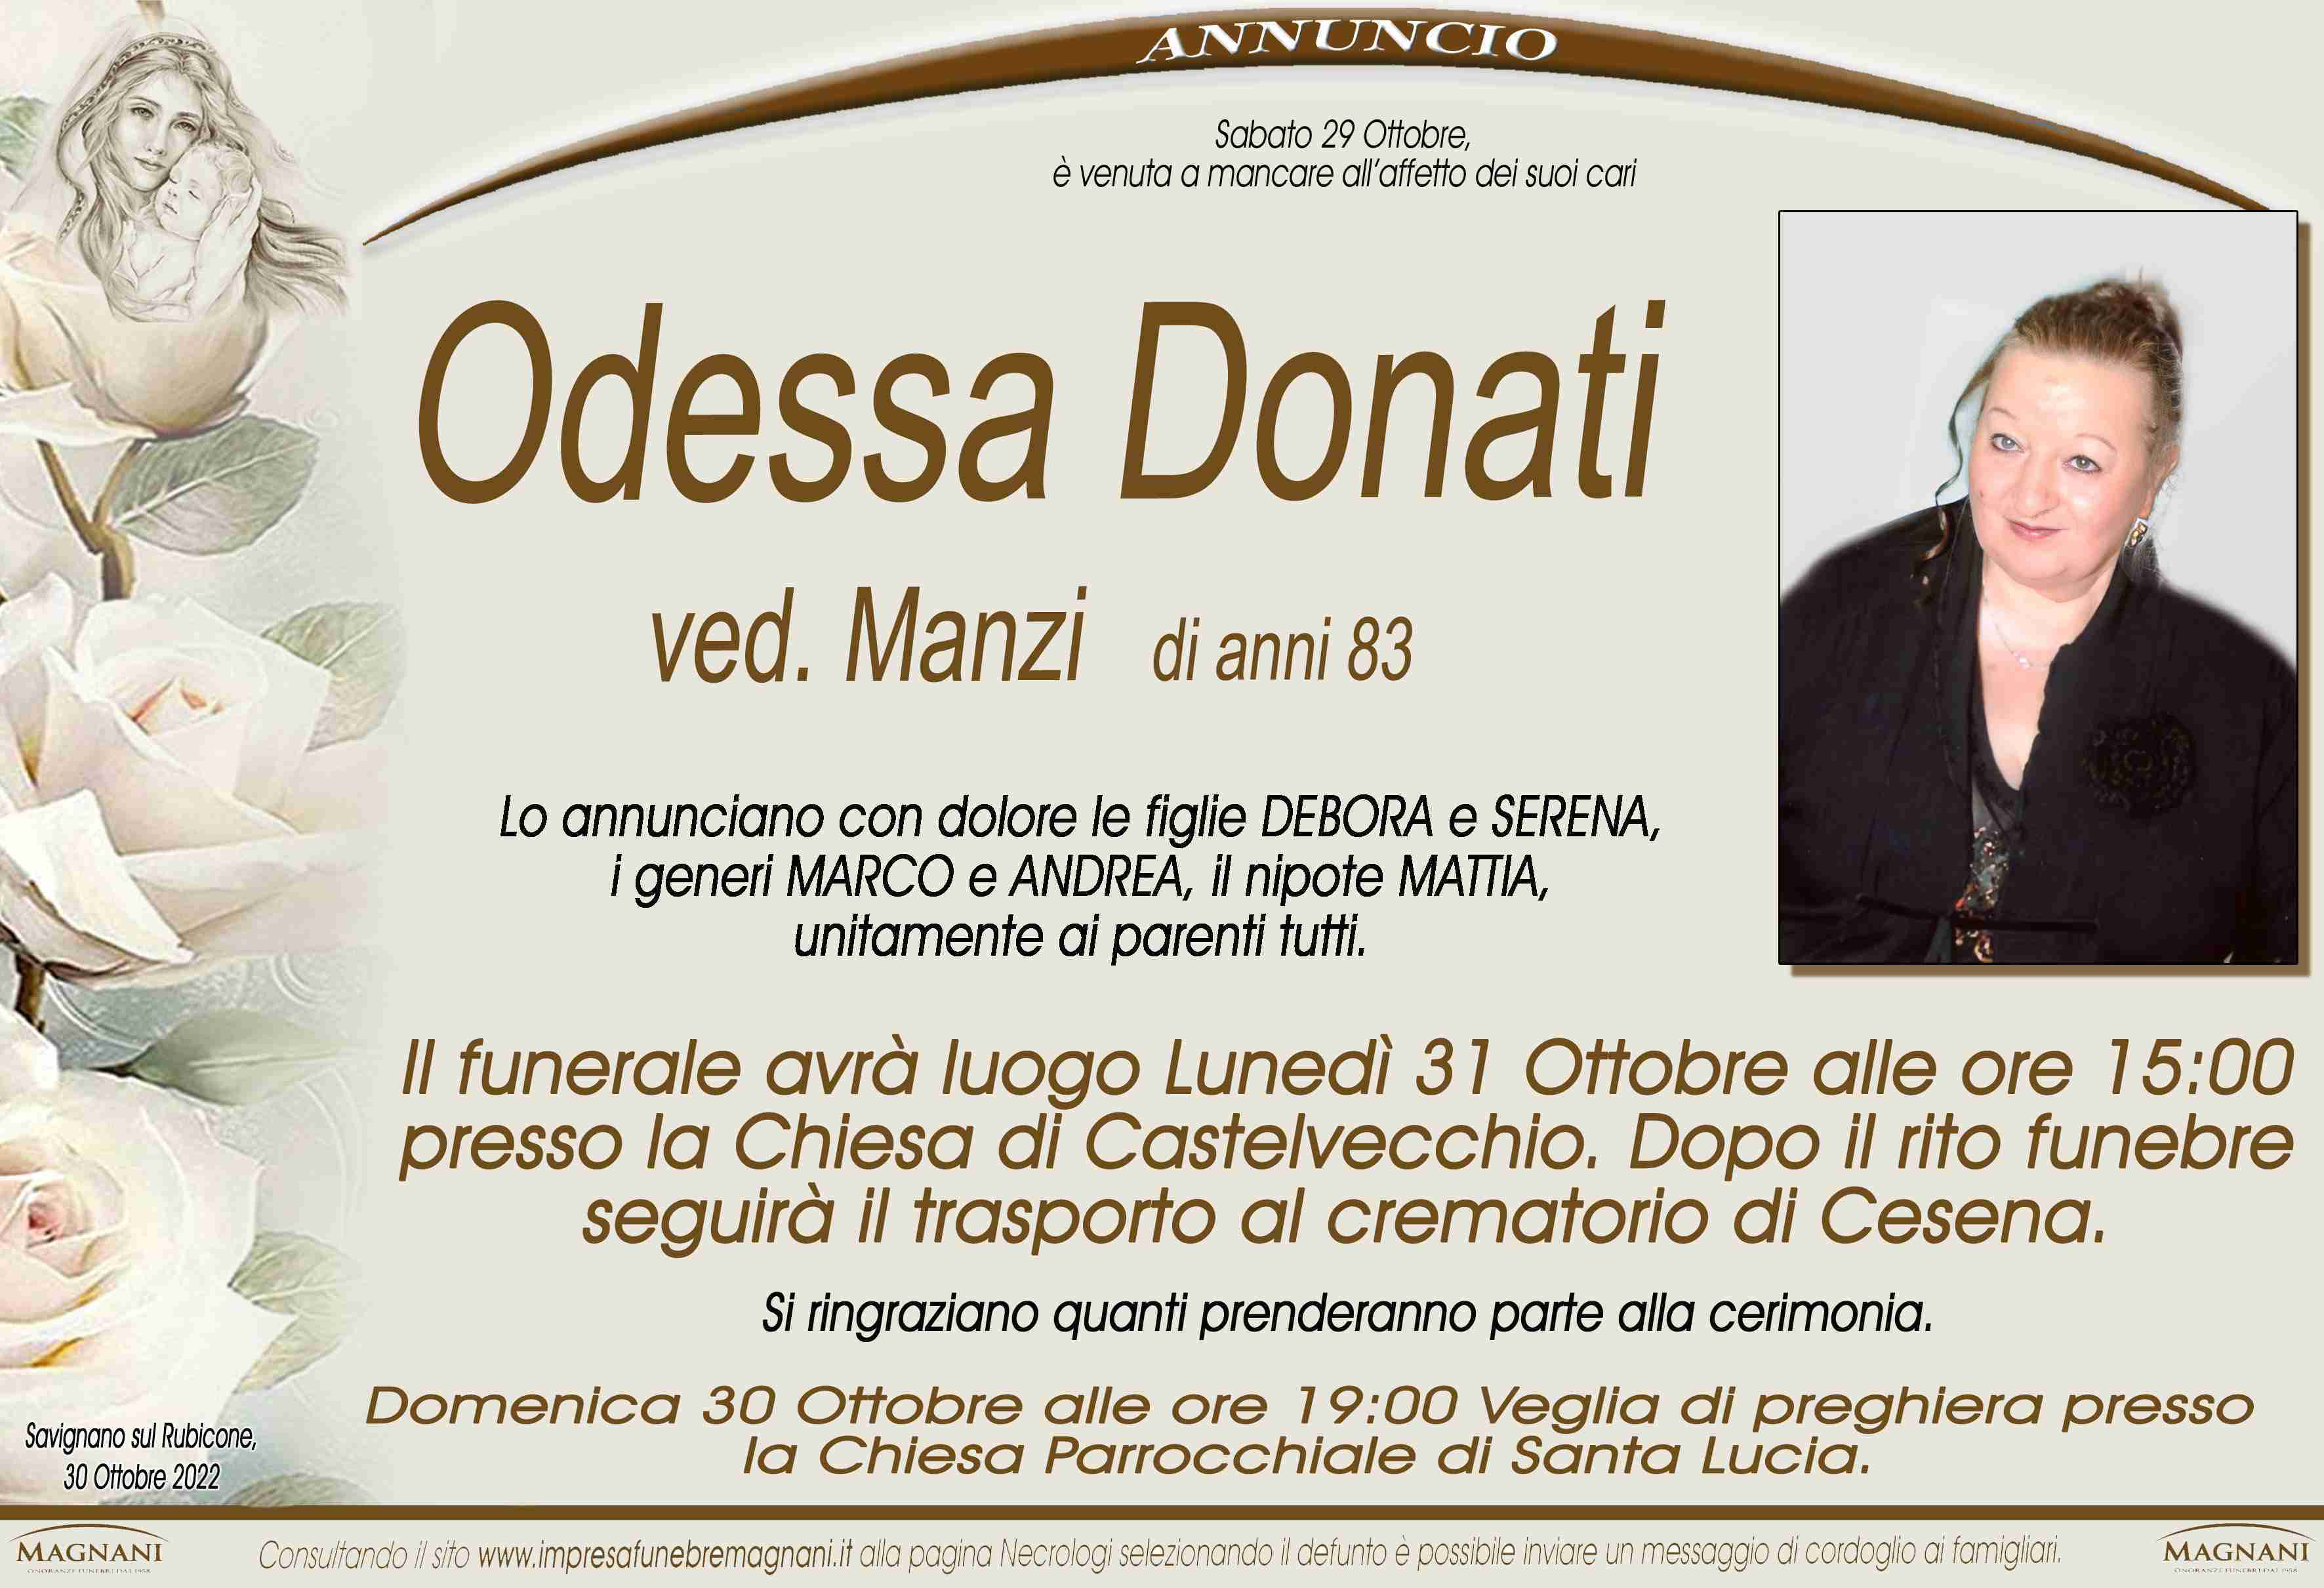 Odessa Donati